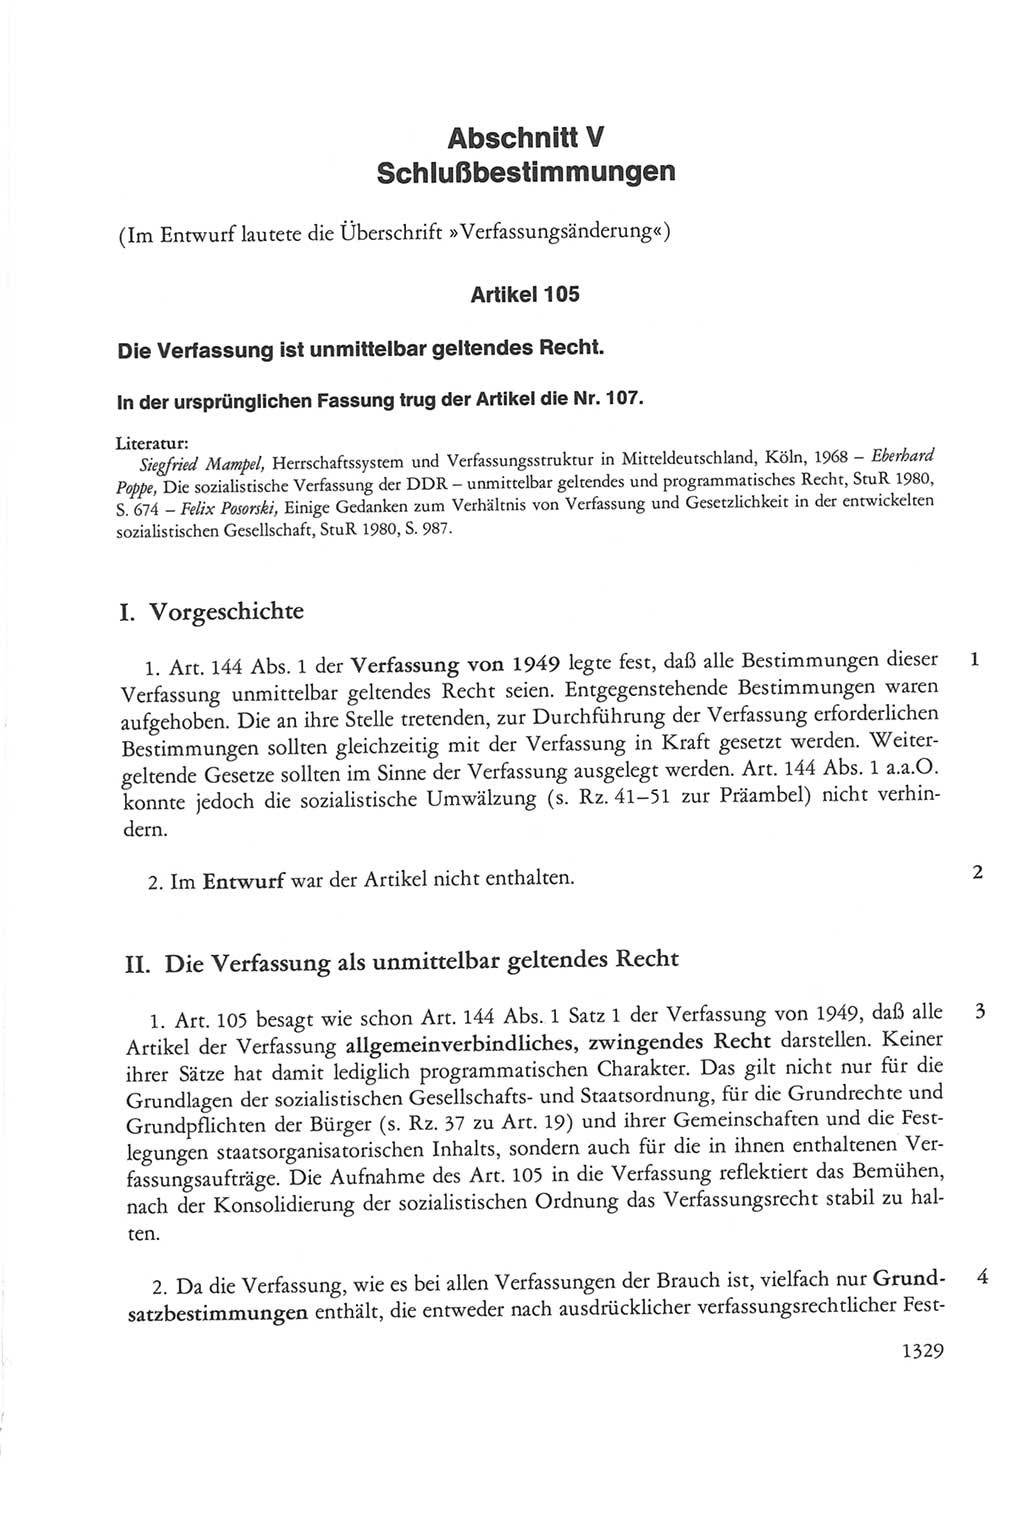 Die sozialistische Verfassung der Deutschen Demokratischen Republik (DDR), Kommentar mit einem Nachtrag 1997, Seite 1329 (Soz. Verf. DDR Komm. Nachtr. 1997, S. 1329)